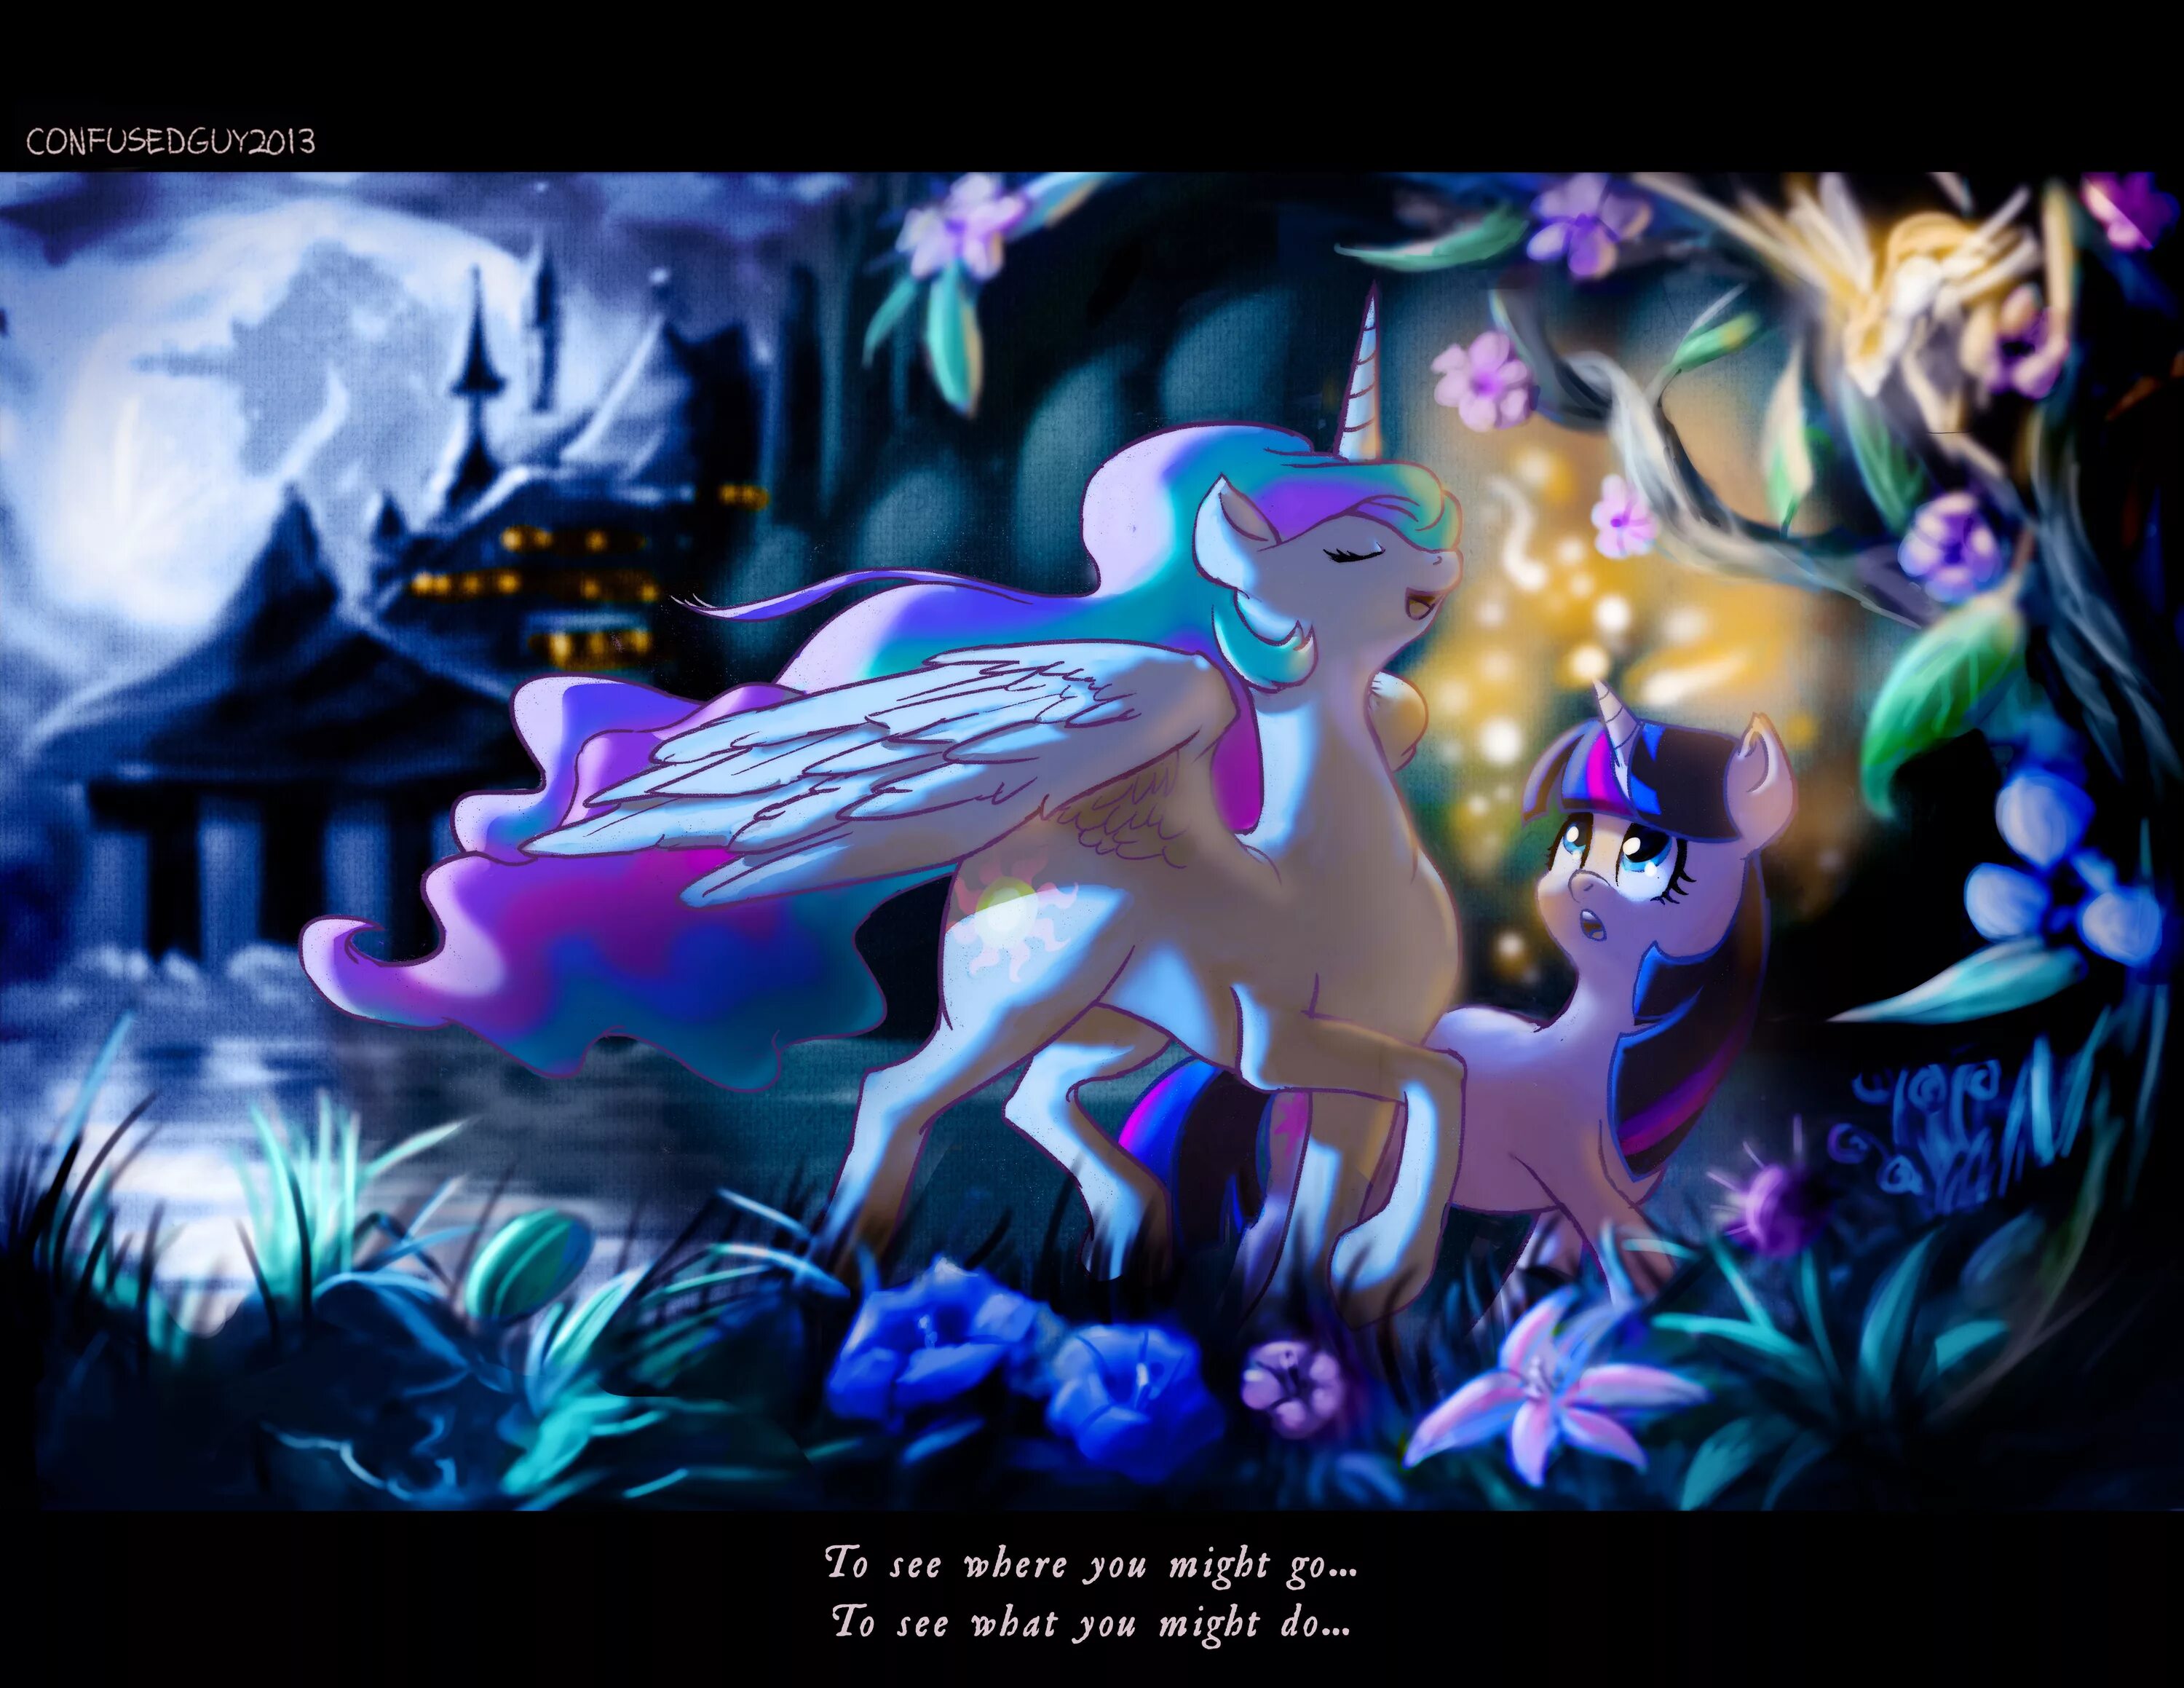 Май литл пони магия принцесс игра мод. МЛП магия принцесс. My little Pony магия принцесс Кантерлот. МЛП магия принцесс пони. Май Лито пони магич принцесс.